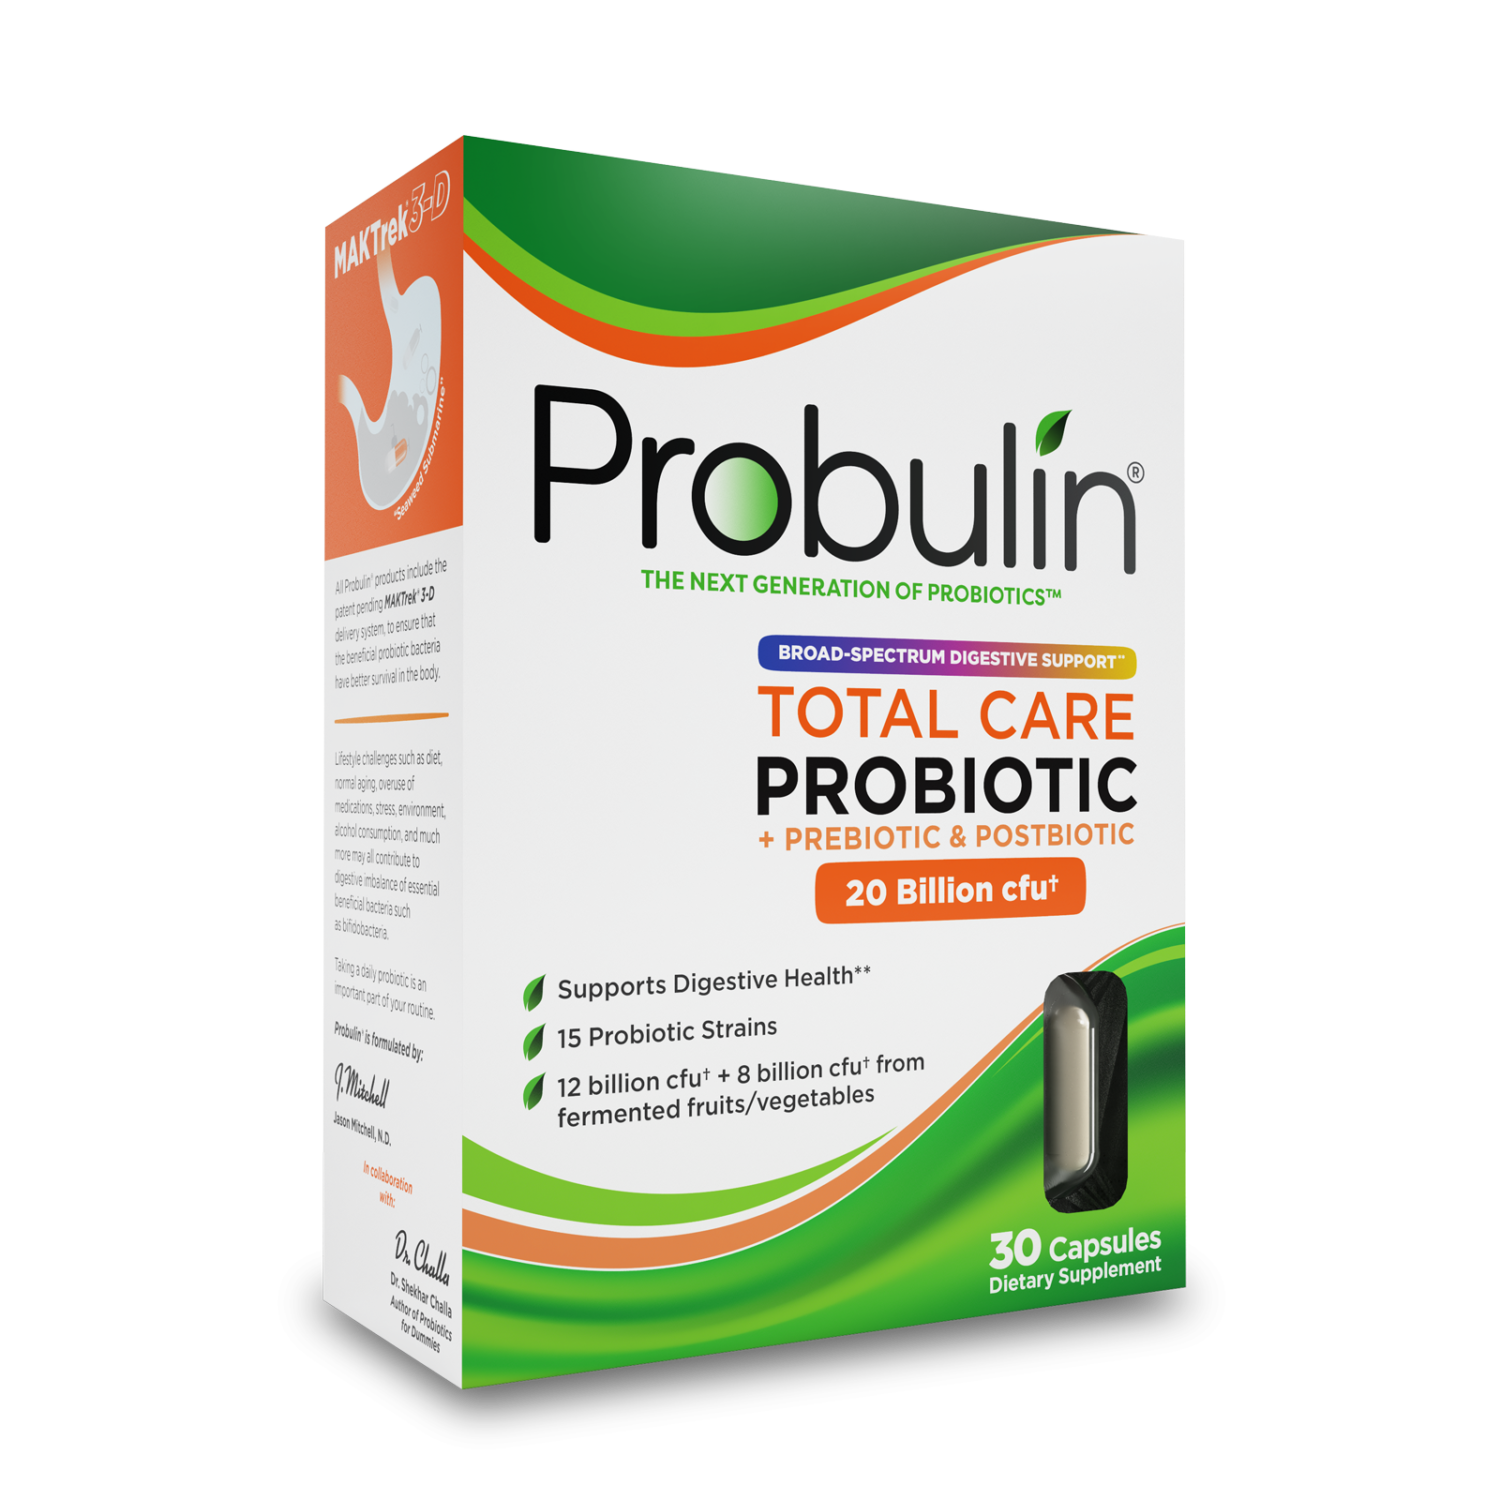 Пробиотики бак. Probulin пробиотик. Пробиотики и пребиотики. Пребиотики и пробиотики для кишечника.